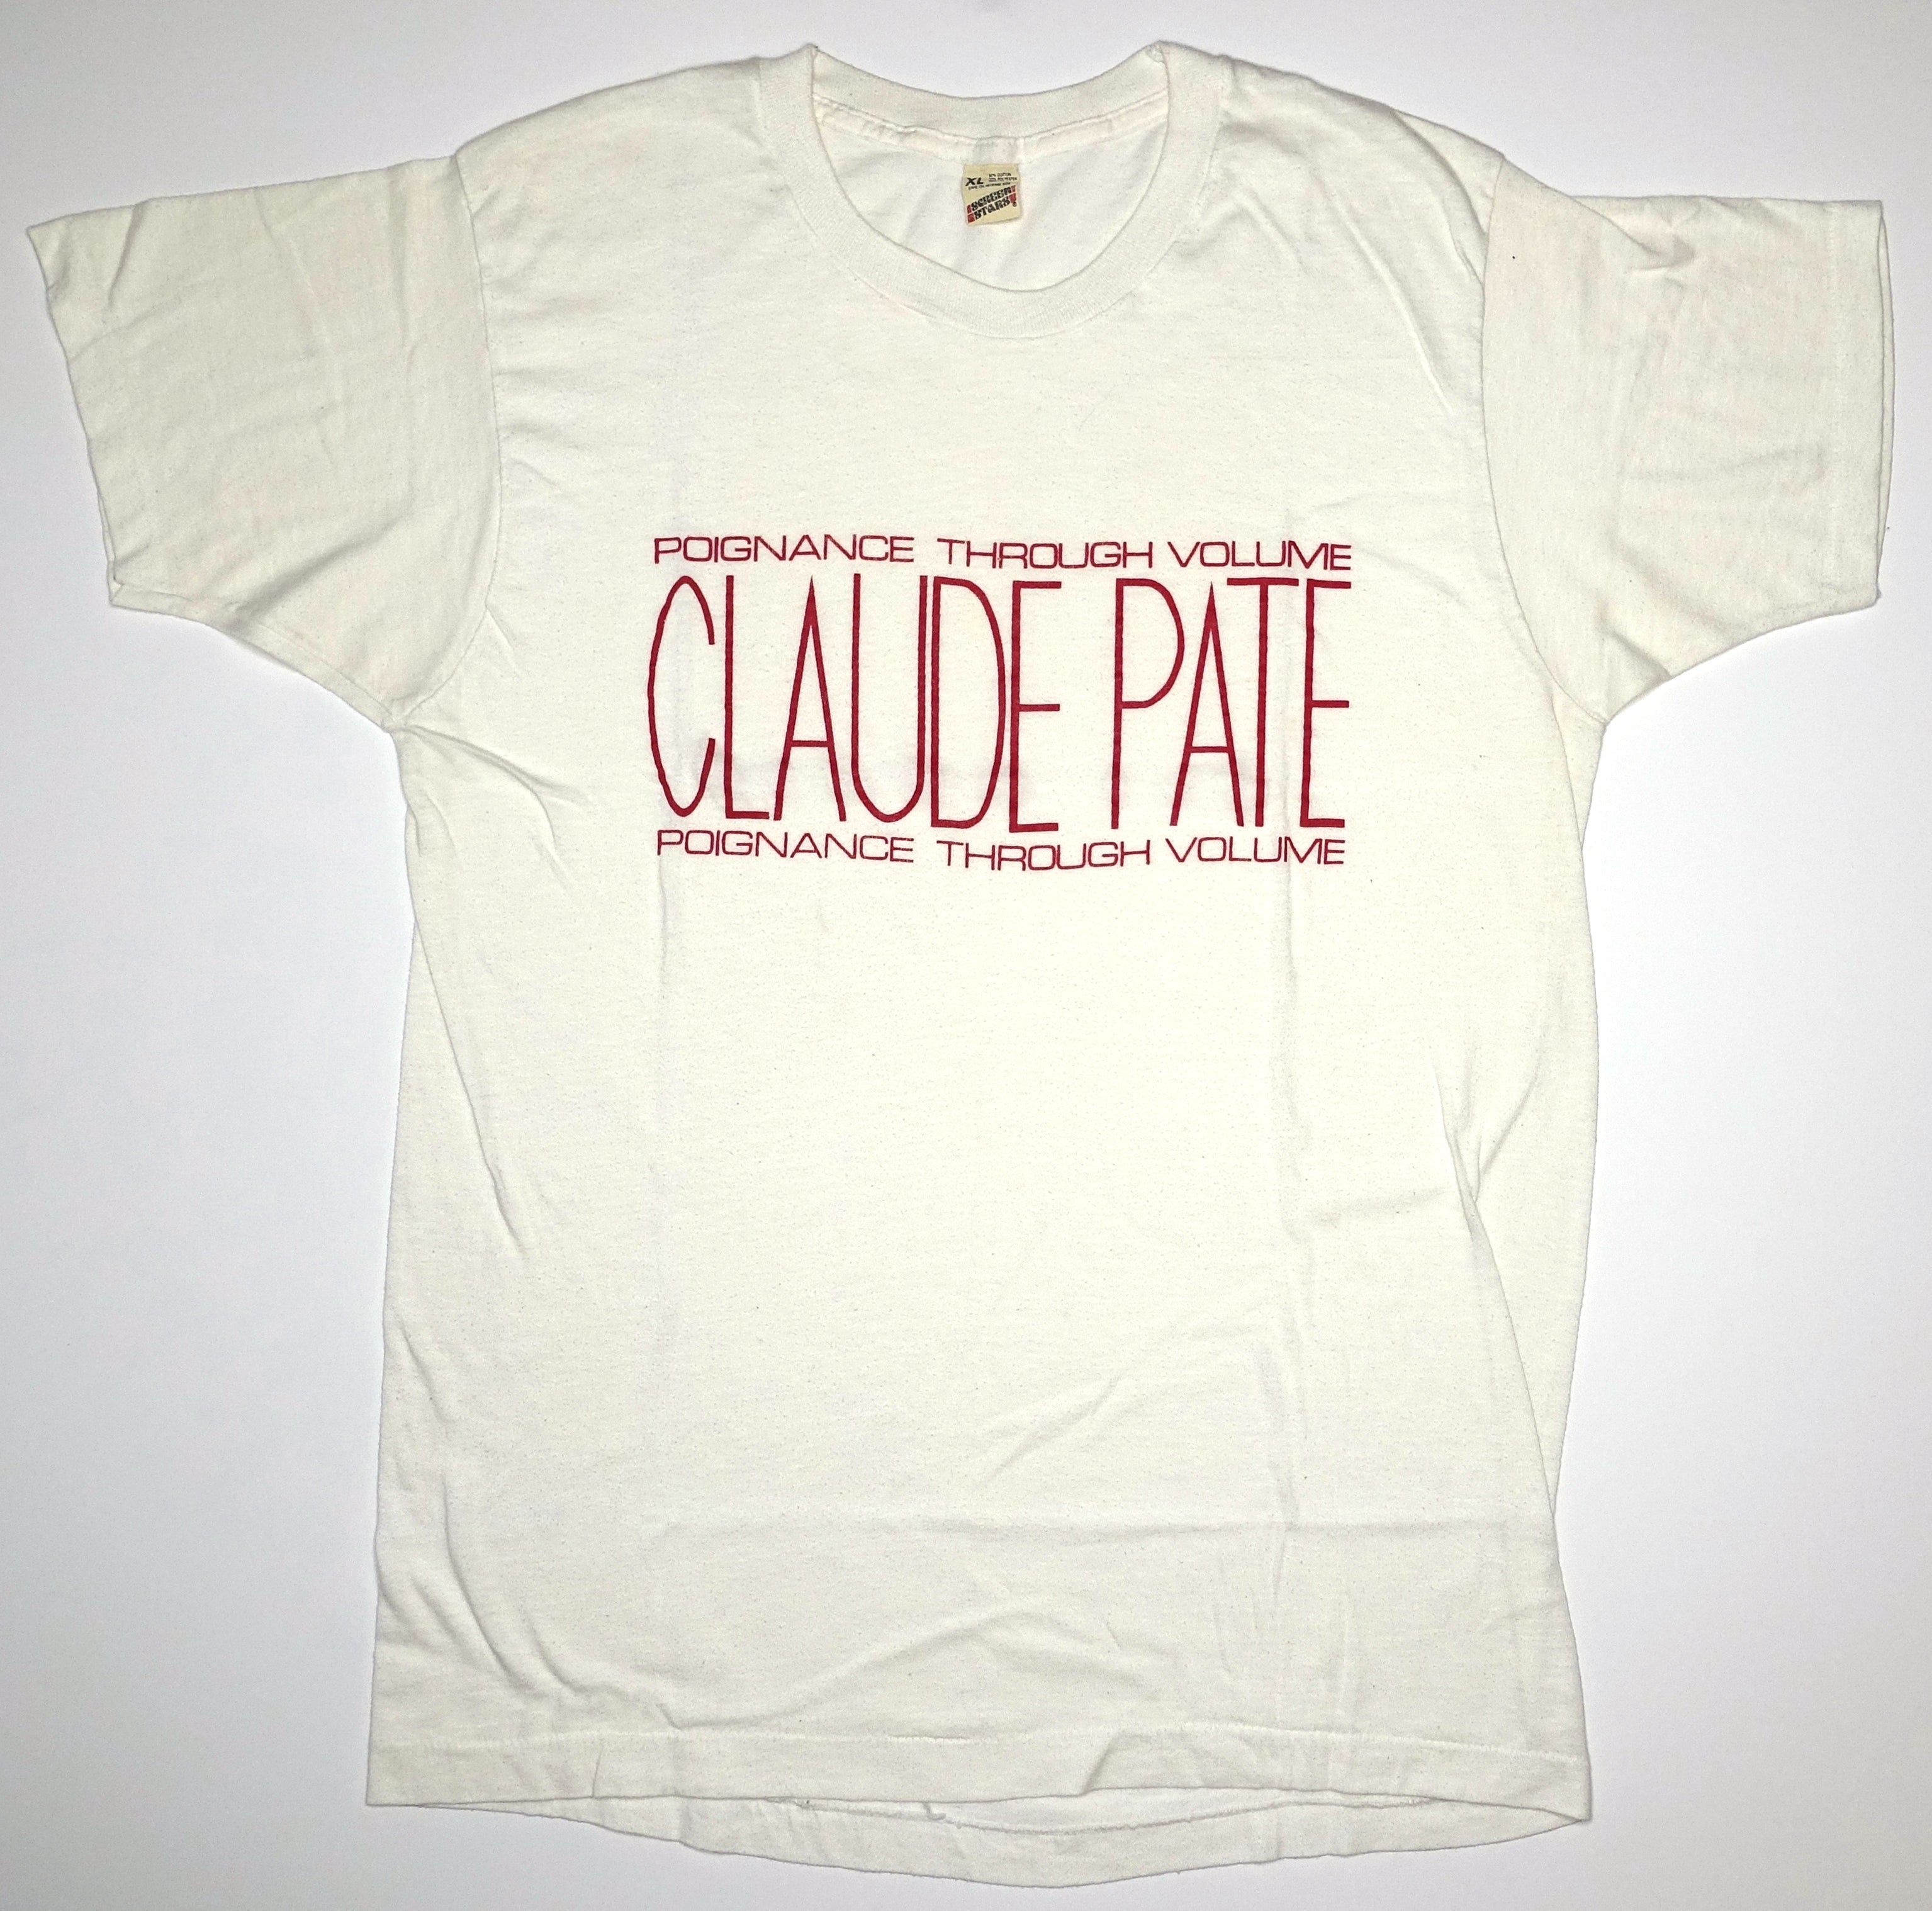 Claude Pate - Poignance Through Voulume 1986 Vintage Tour Shirt Size XL